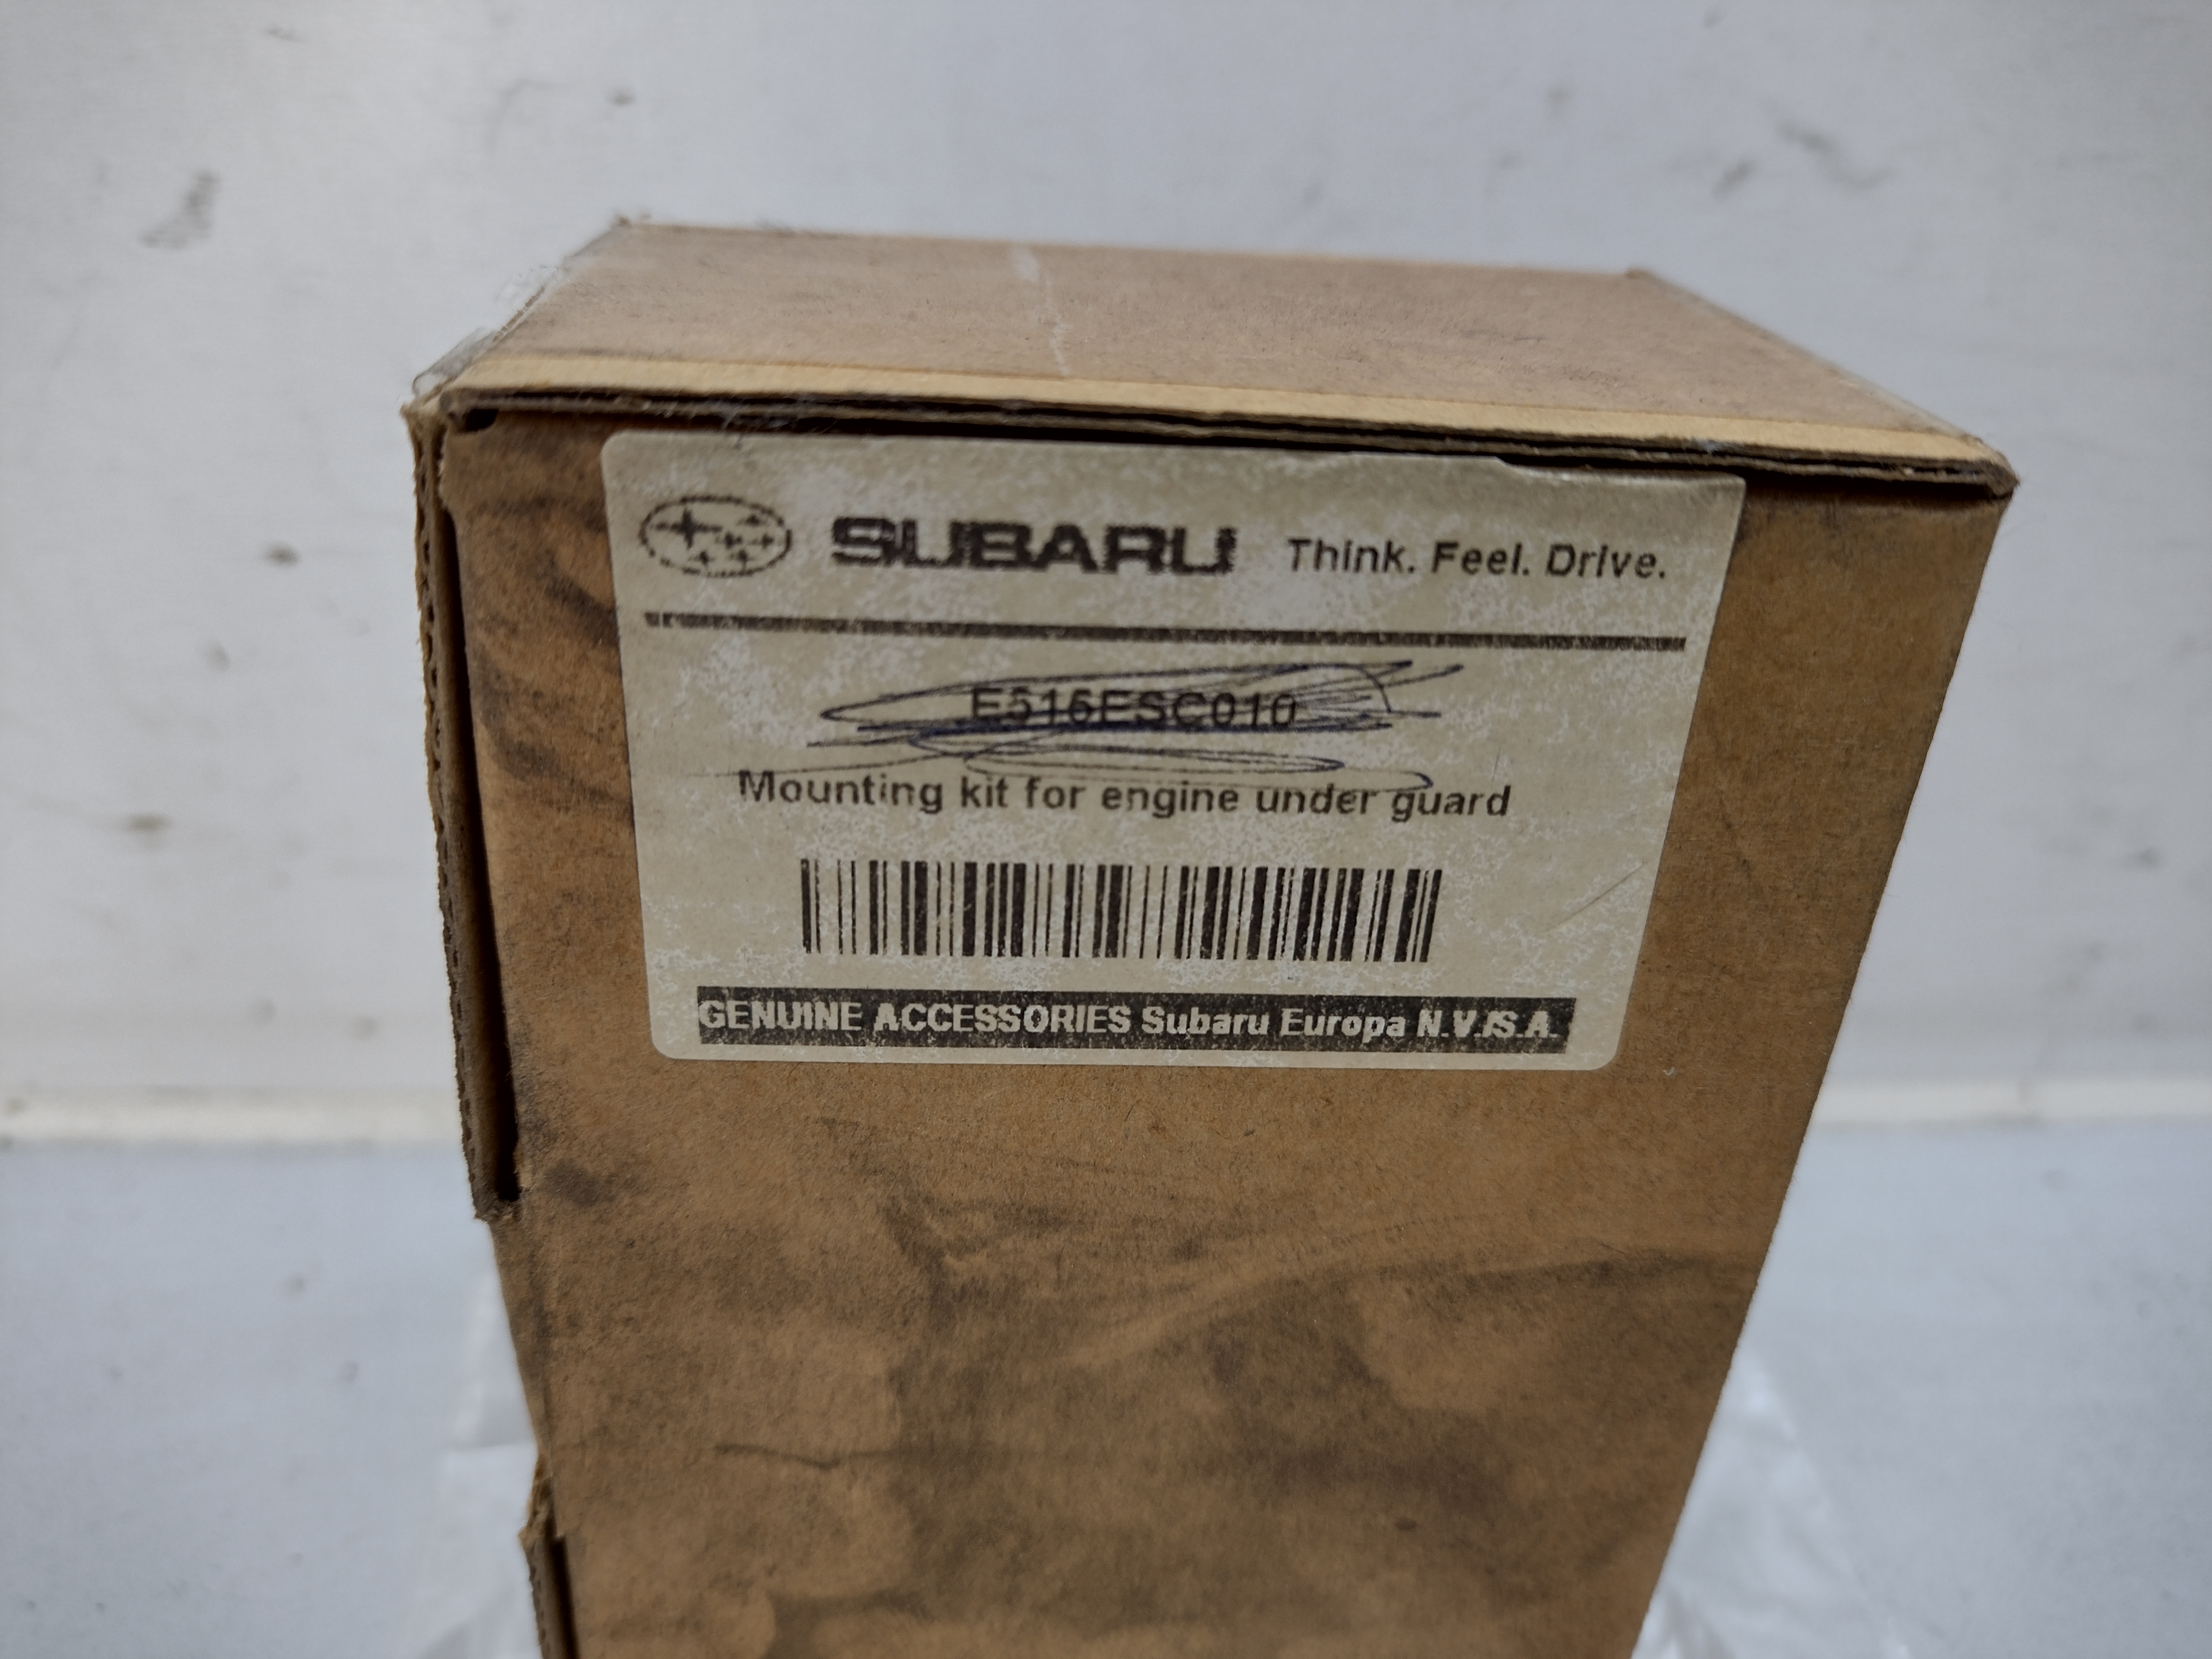 Unterfahrschutz Montage Satz Schrauben Muttern E515ESC010 für Subaru